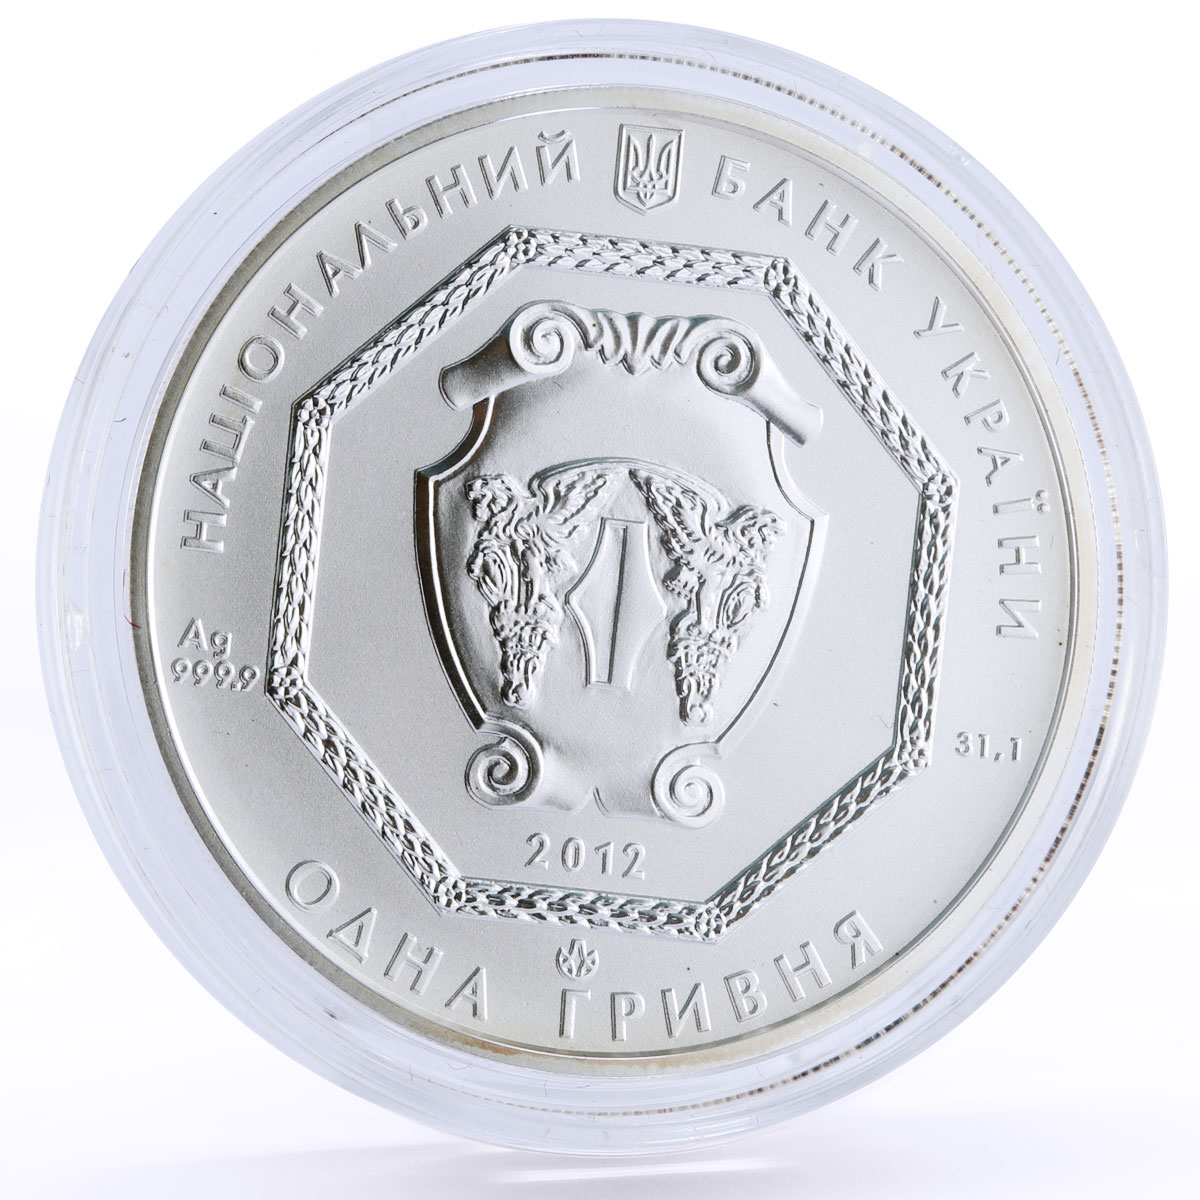 Ukraine 1 hryvnia Faith series Archangel Michael silver coin 2012